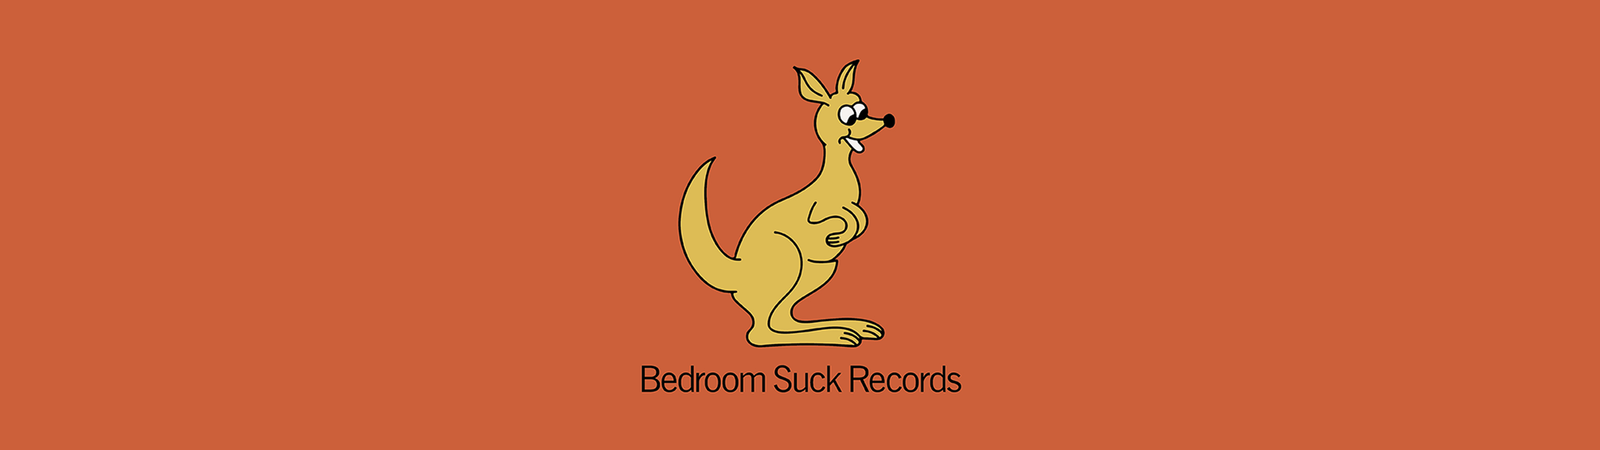 Bedroom Suck Records